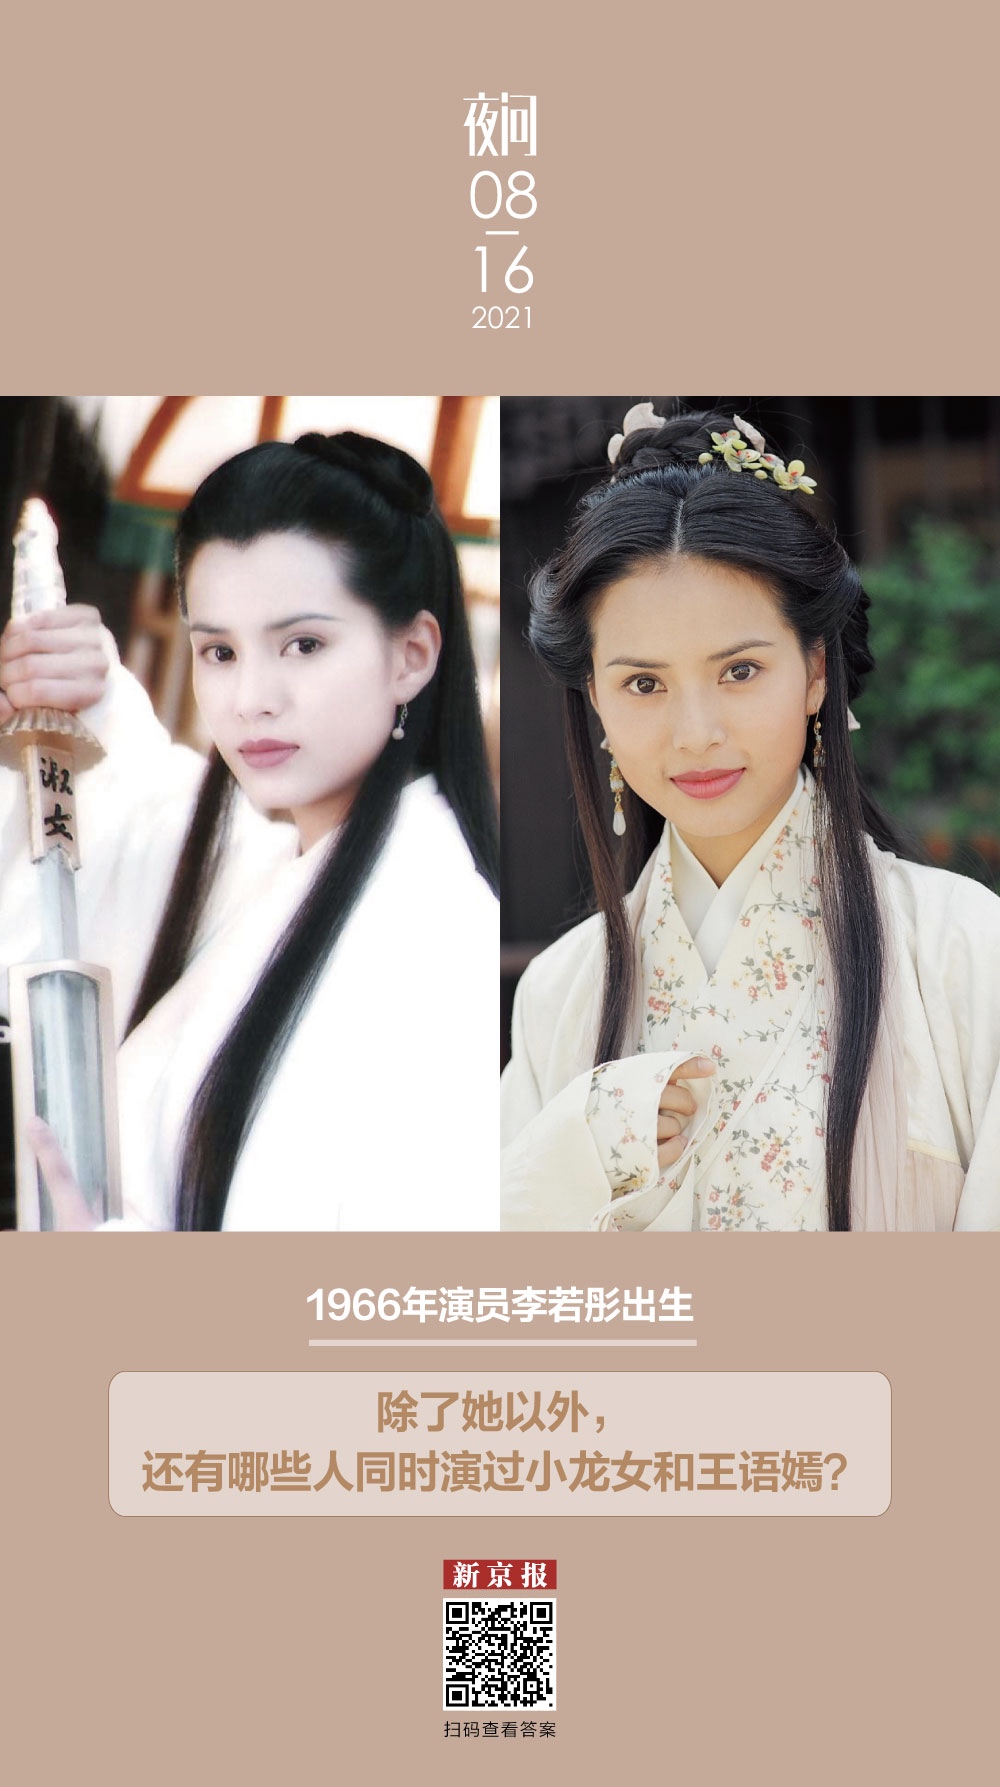 8月14日,2021年版的《天龙八部》开播了,这次王语嫣的饰演者是文咏珊.